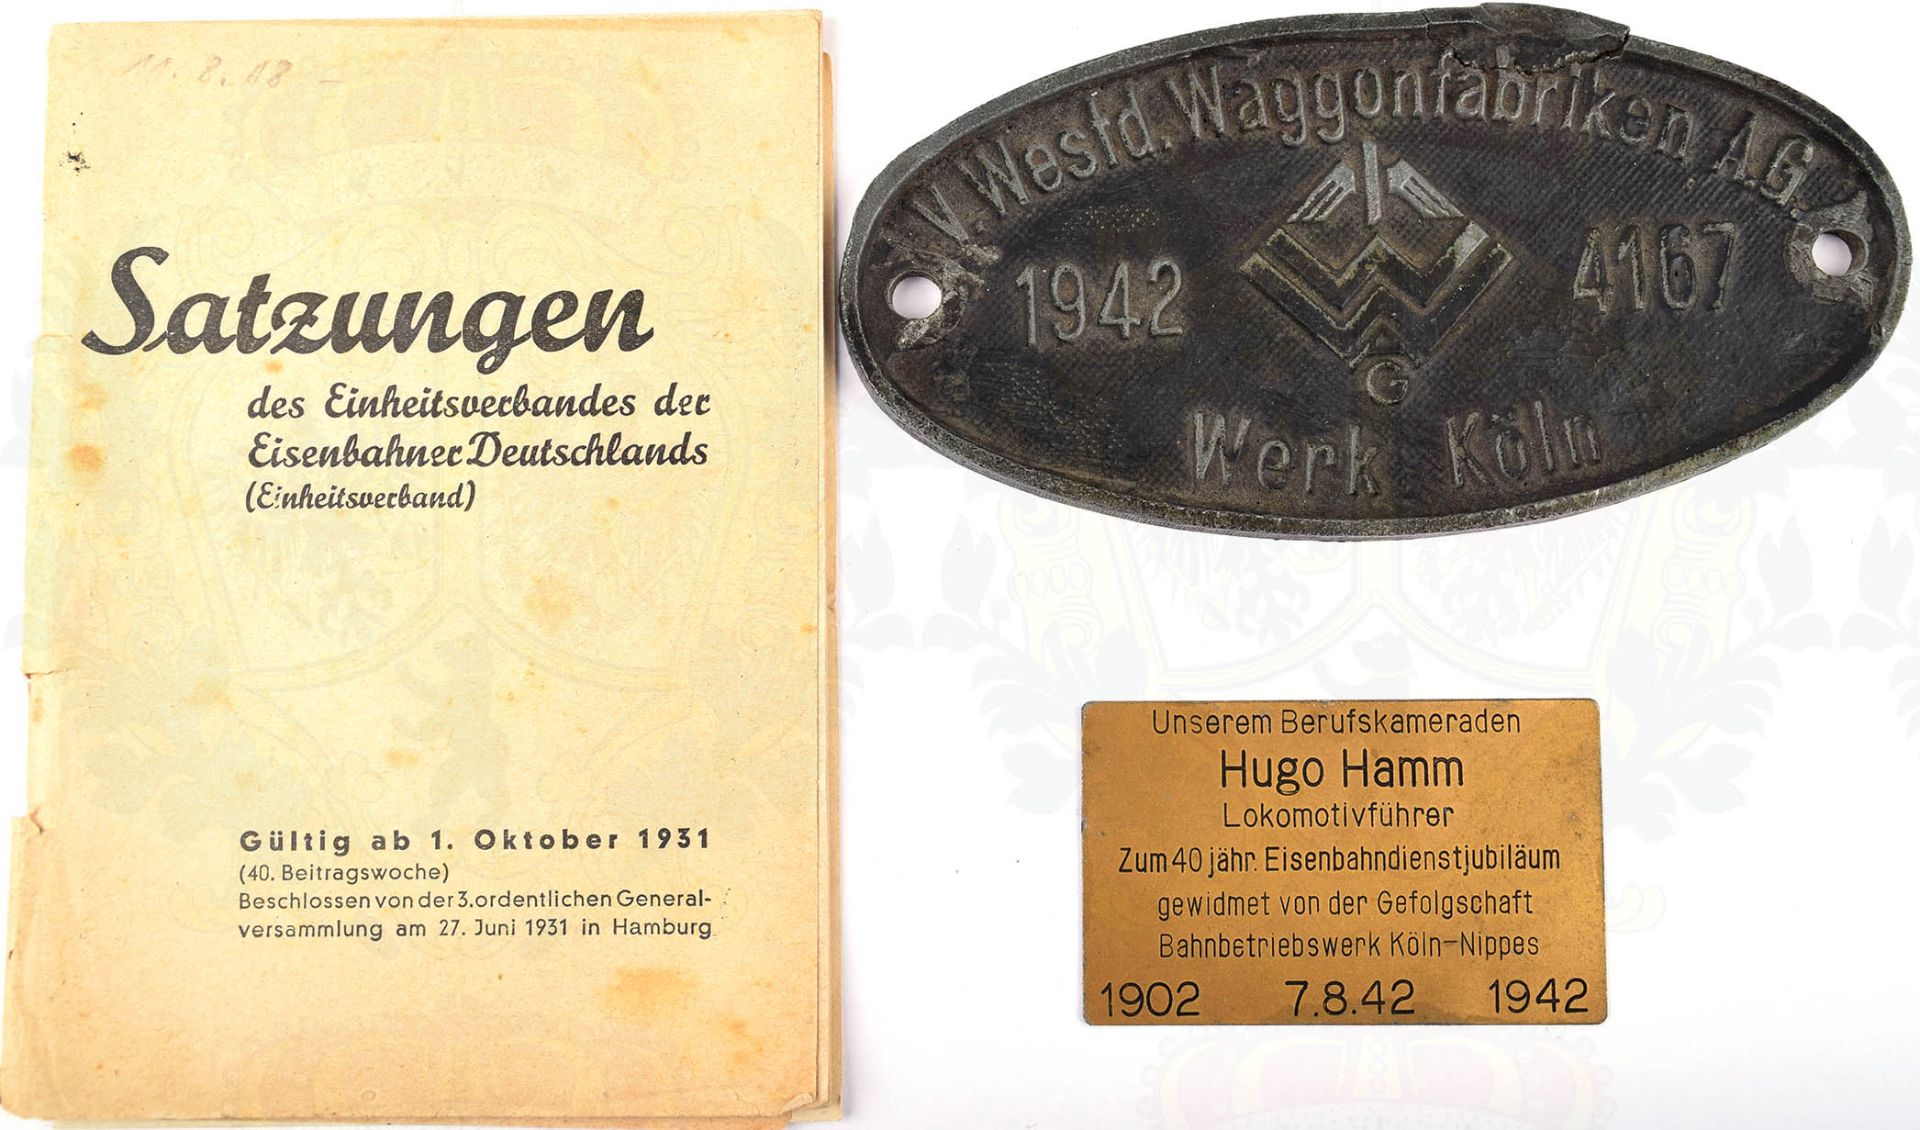 KONVOLUT REICHSBAHN, Waggonschild „V. Westd. Waggonfabriken A.G. 1942 Werk Köln“, Feinzink/pat., - Bild 2 aus 4